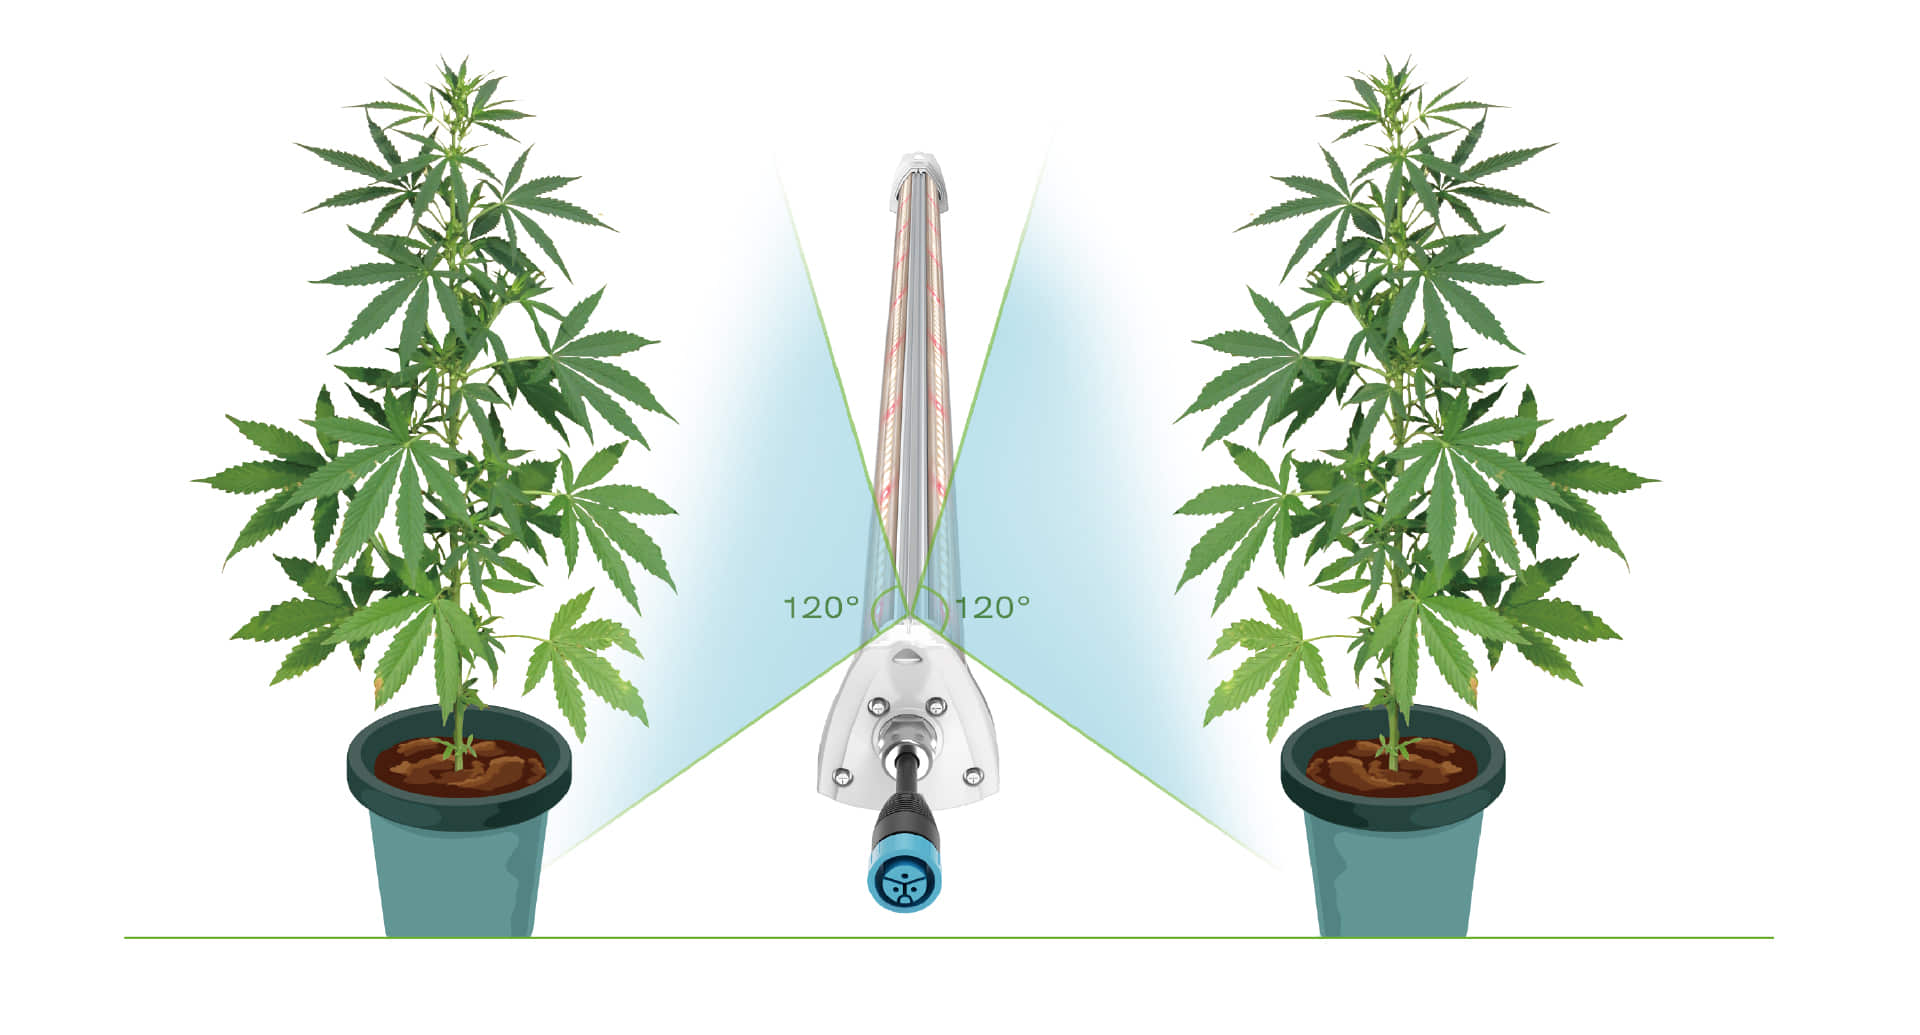 HL03 LED grow light for cannabis